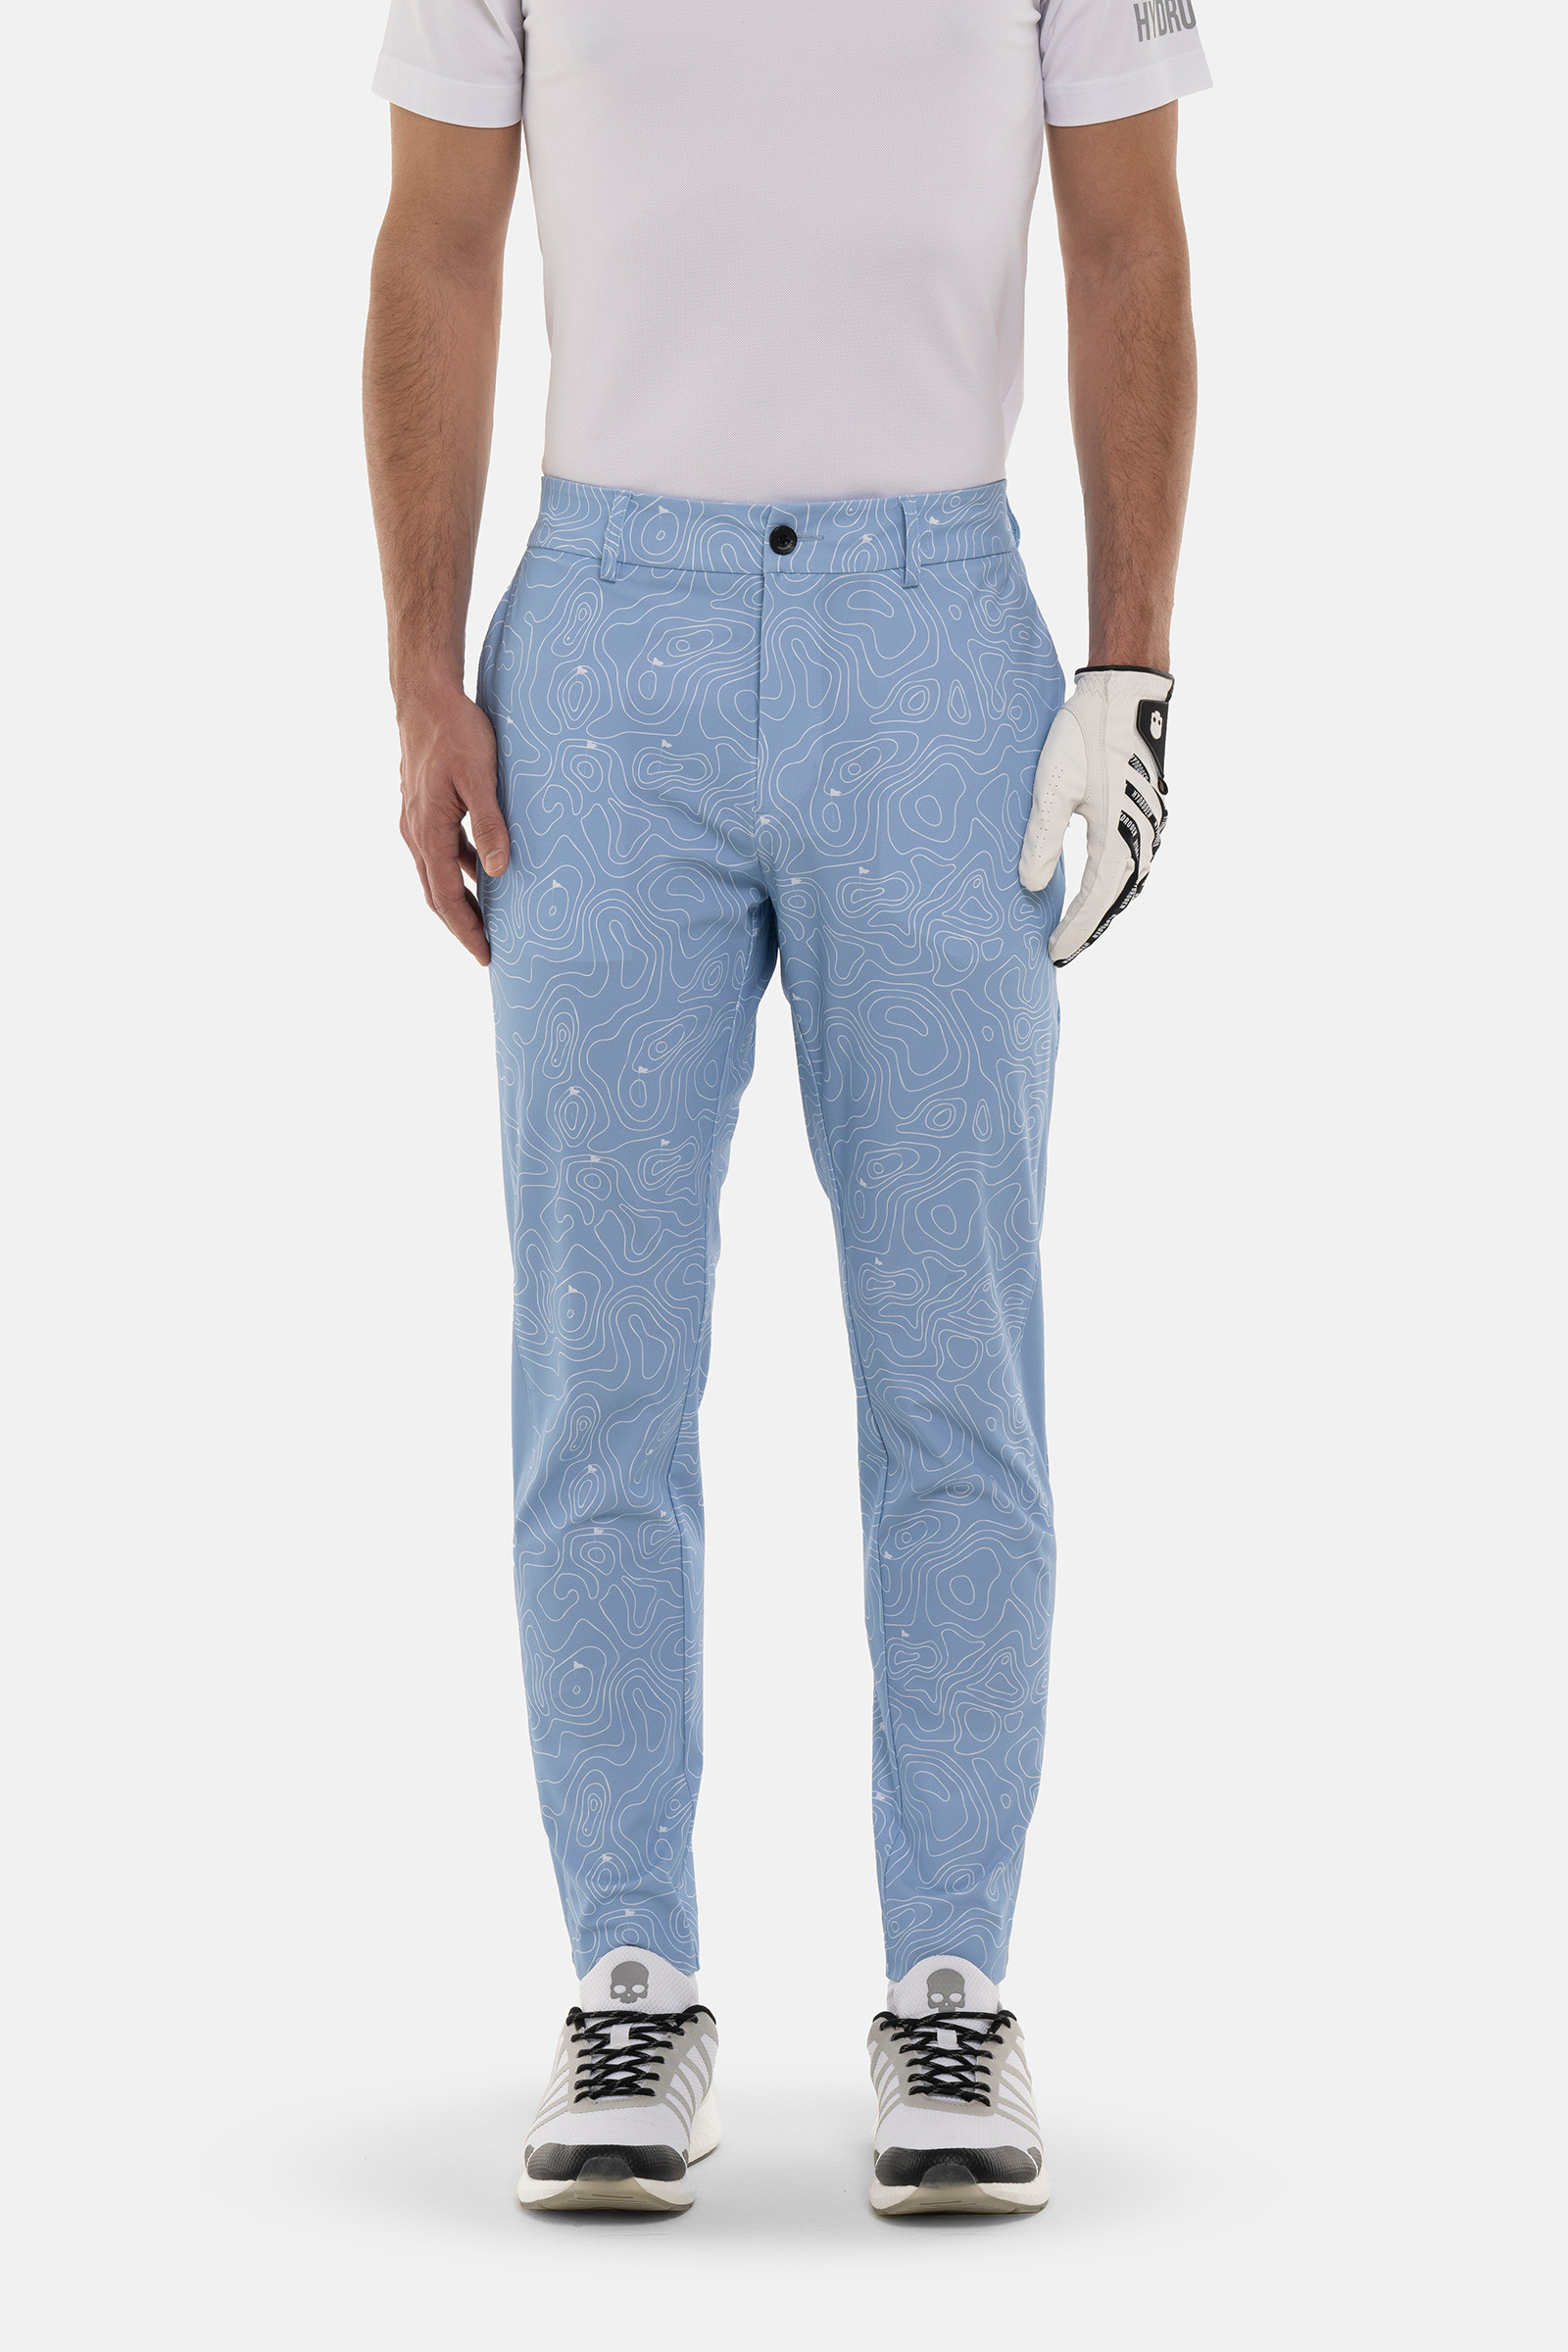 GOLF FIELDS TECH PANTS - LIGHT BLUE - Hydrogen - Luxury Sportwear